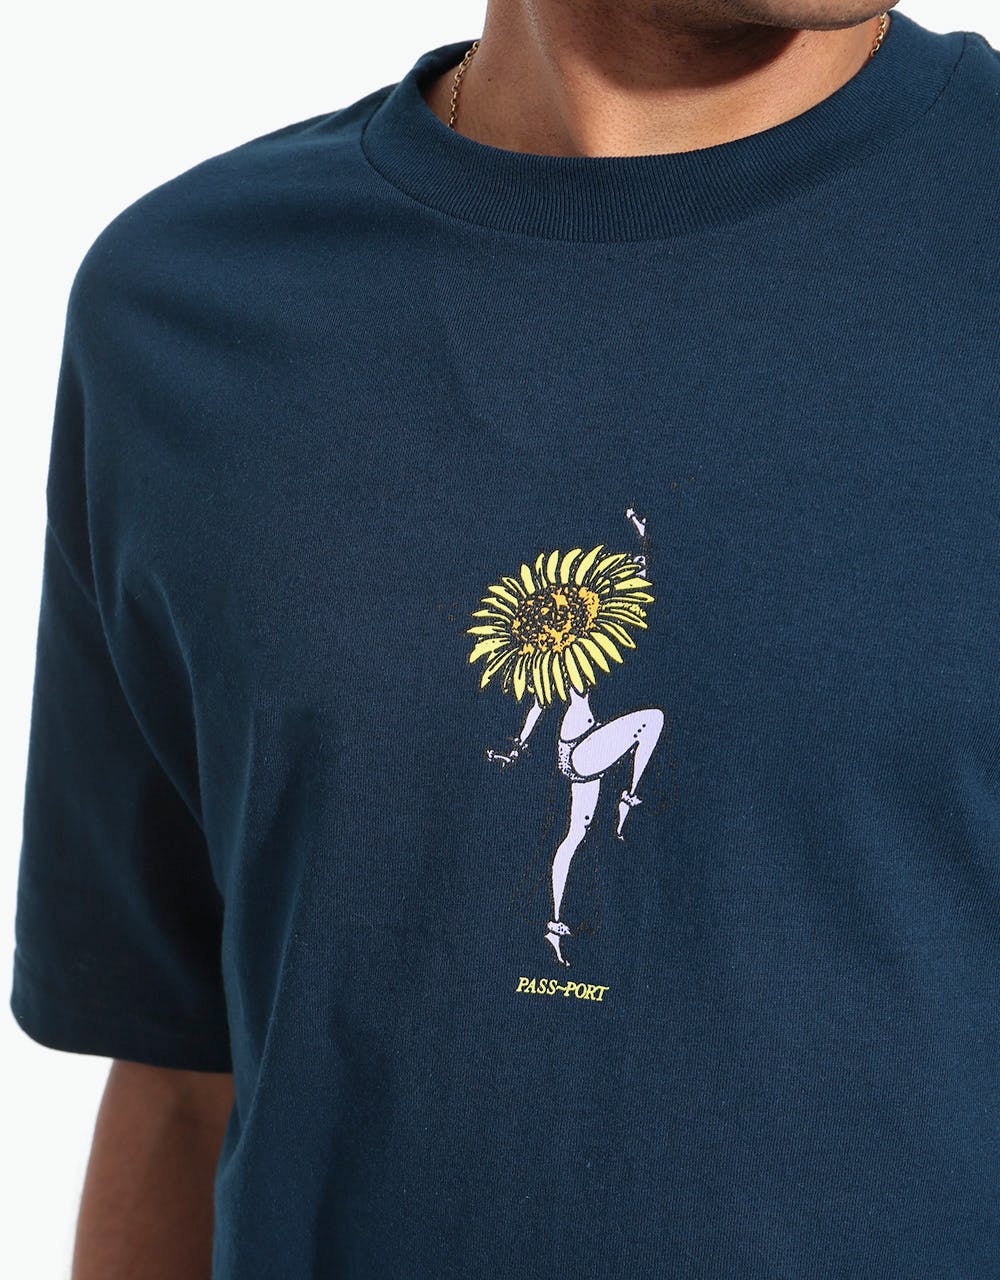 Pass Port Floral Dancer T-Shirt - Navy